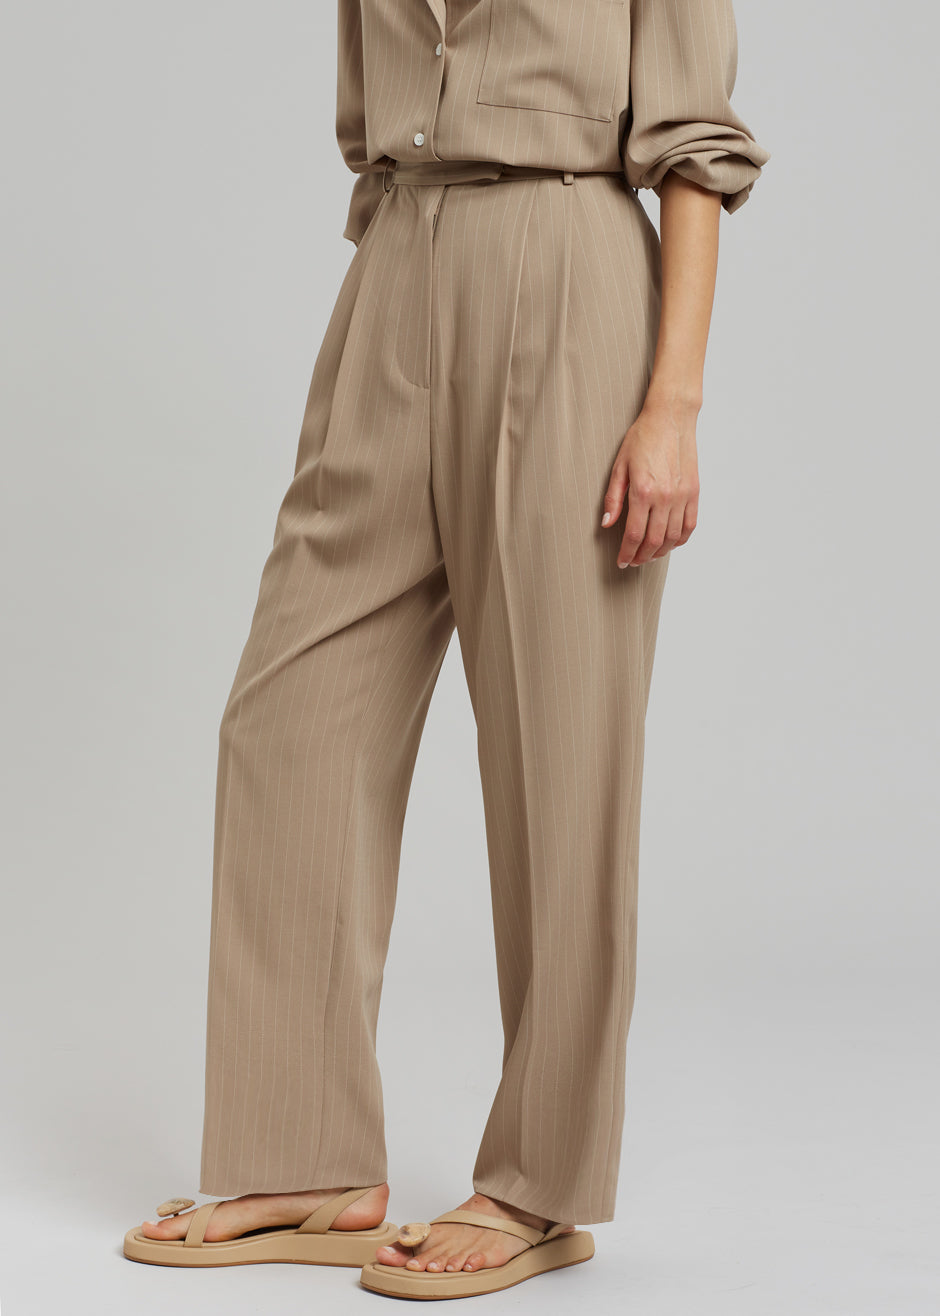 Bea Fluid Pinstripe Suit Pants - Camel - 6